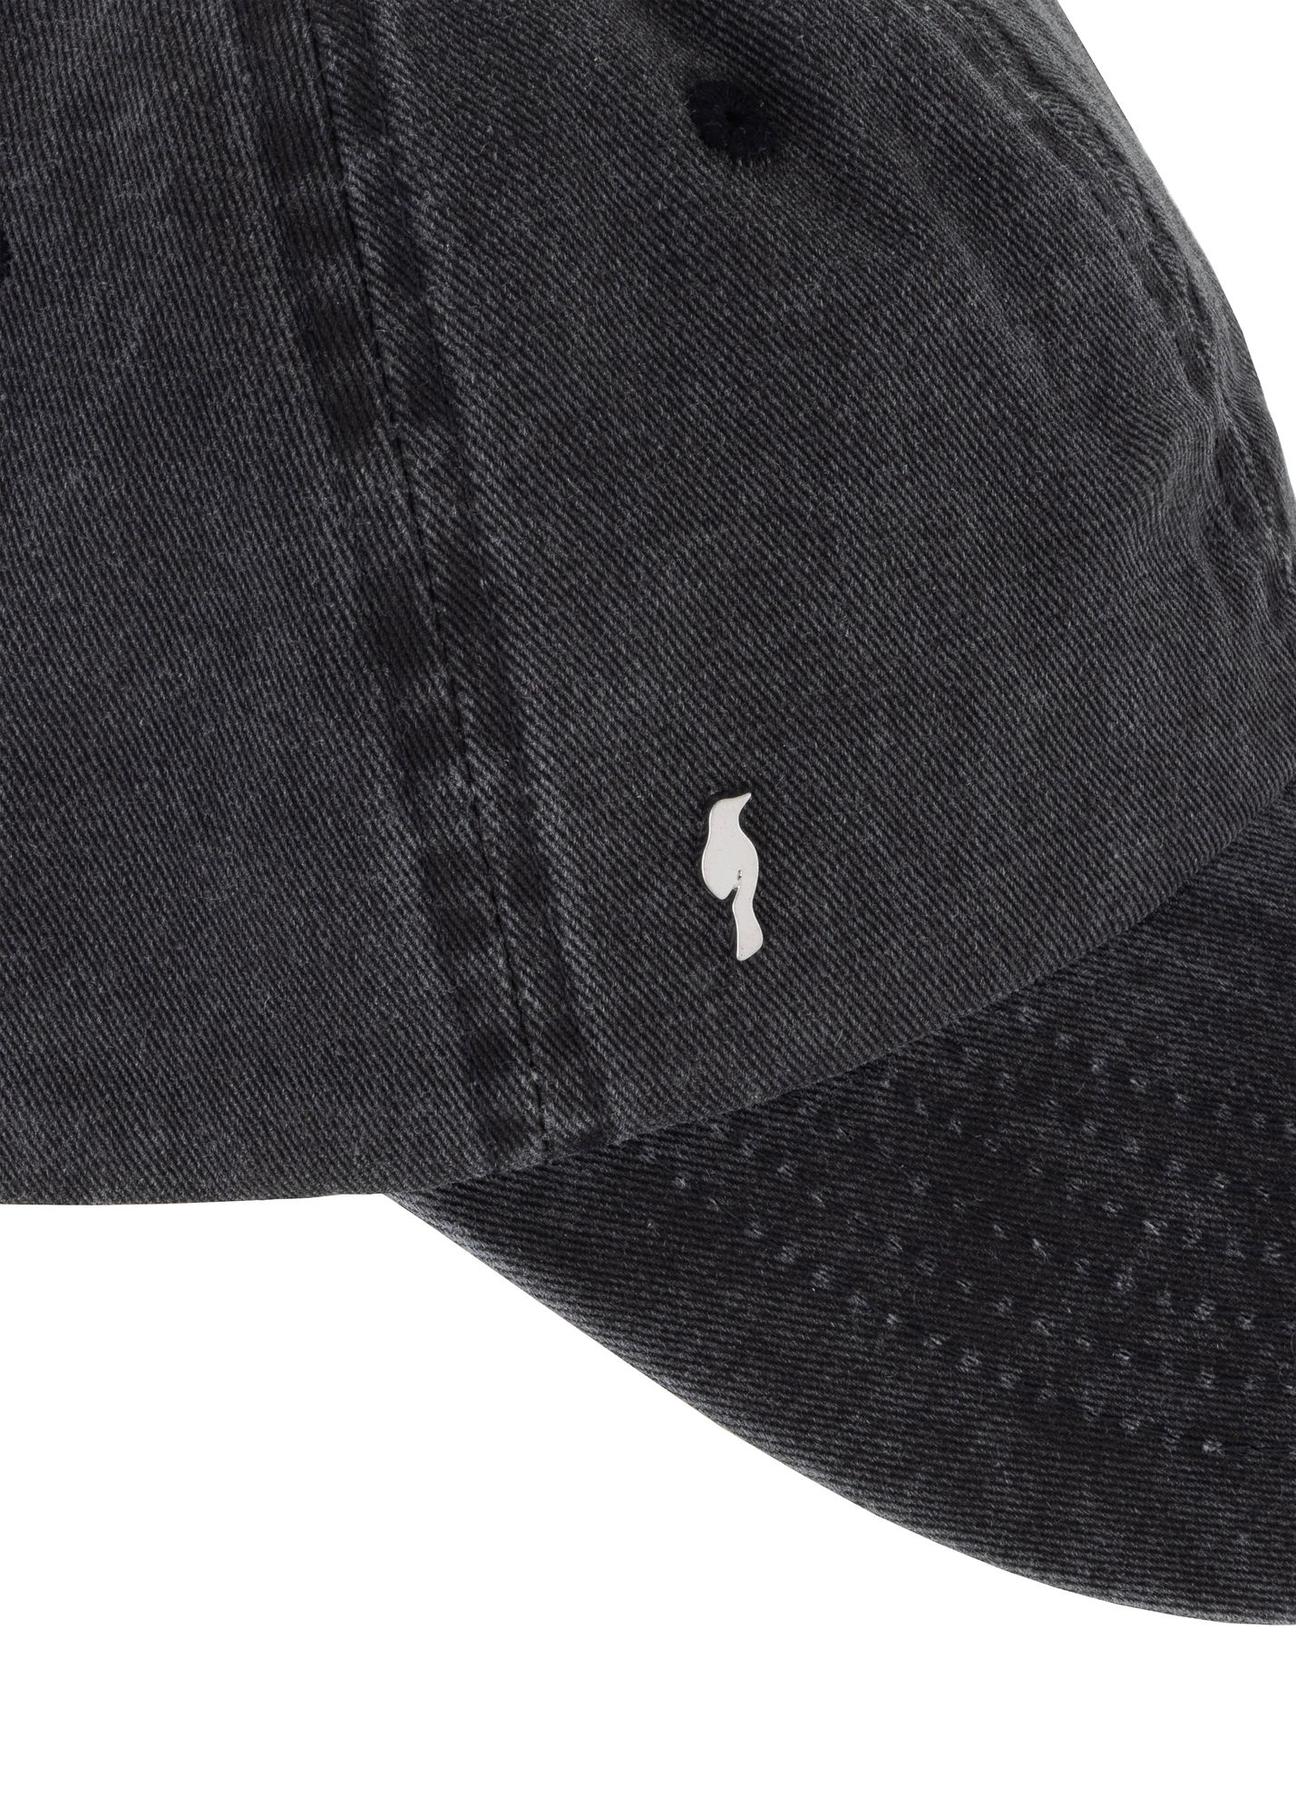 Szara czapka jeansowa z daszkiem unisex CZALT-0011-91(W24)